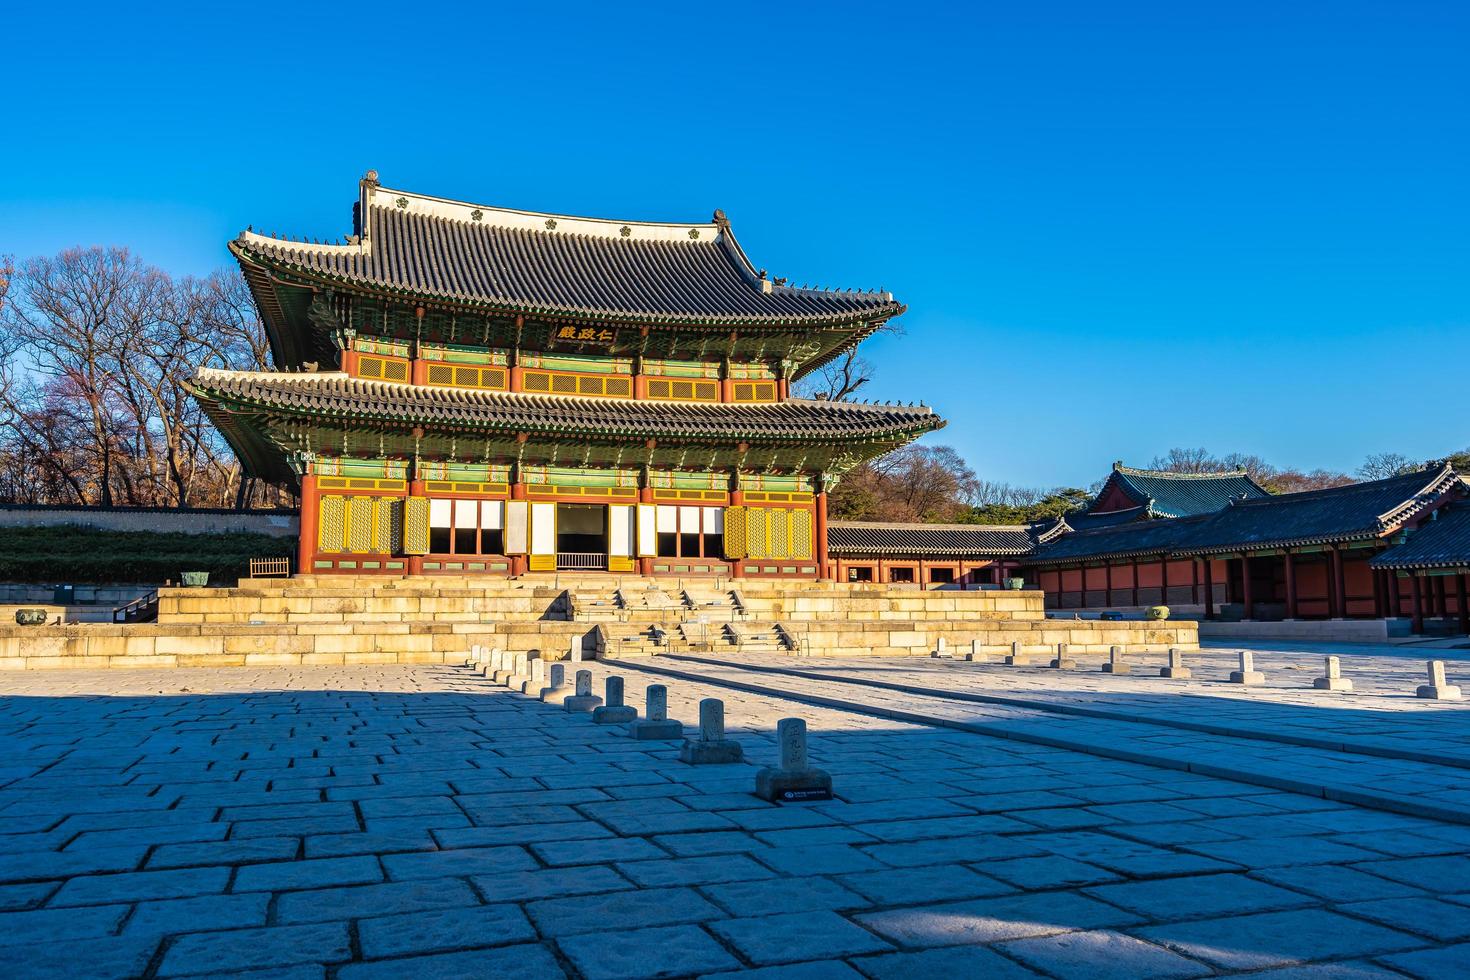 changdeokgung-paleis in de stad van seoel, zuid-korea foto